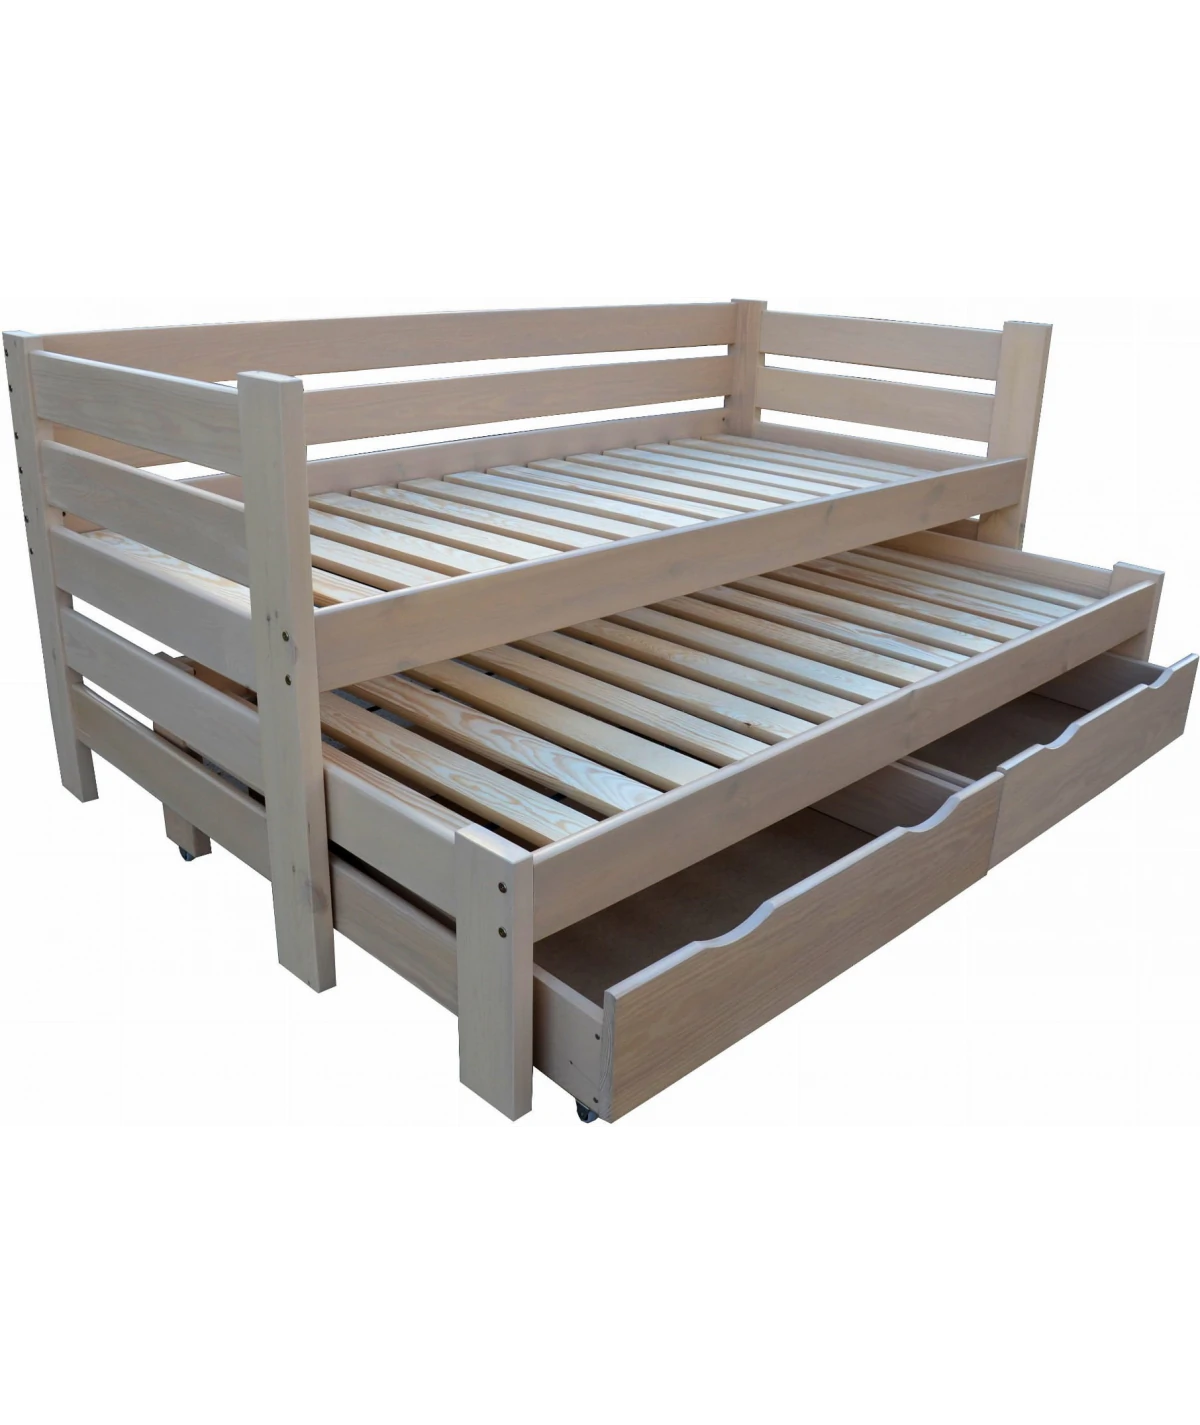 Funkcjonalne łóżko piętrowe niskie Elza z wysuwanymi szufladami Zaczarowana Sypialnia